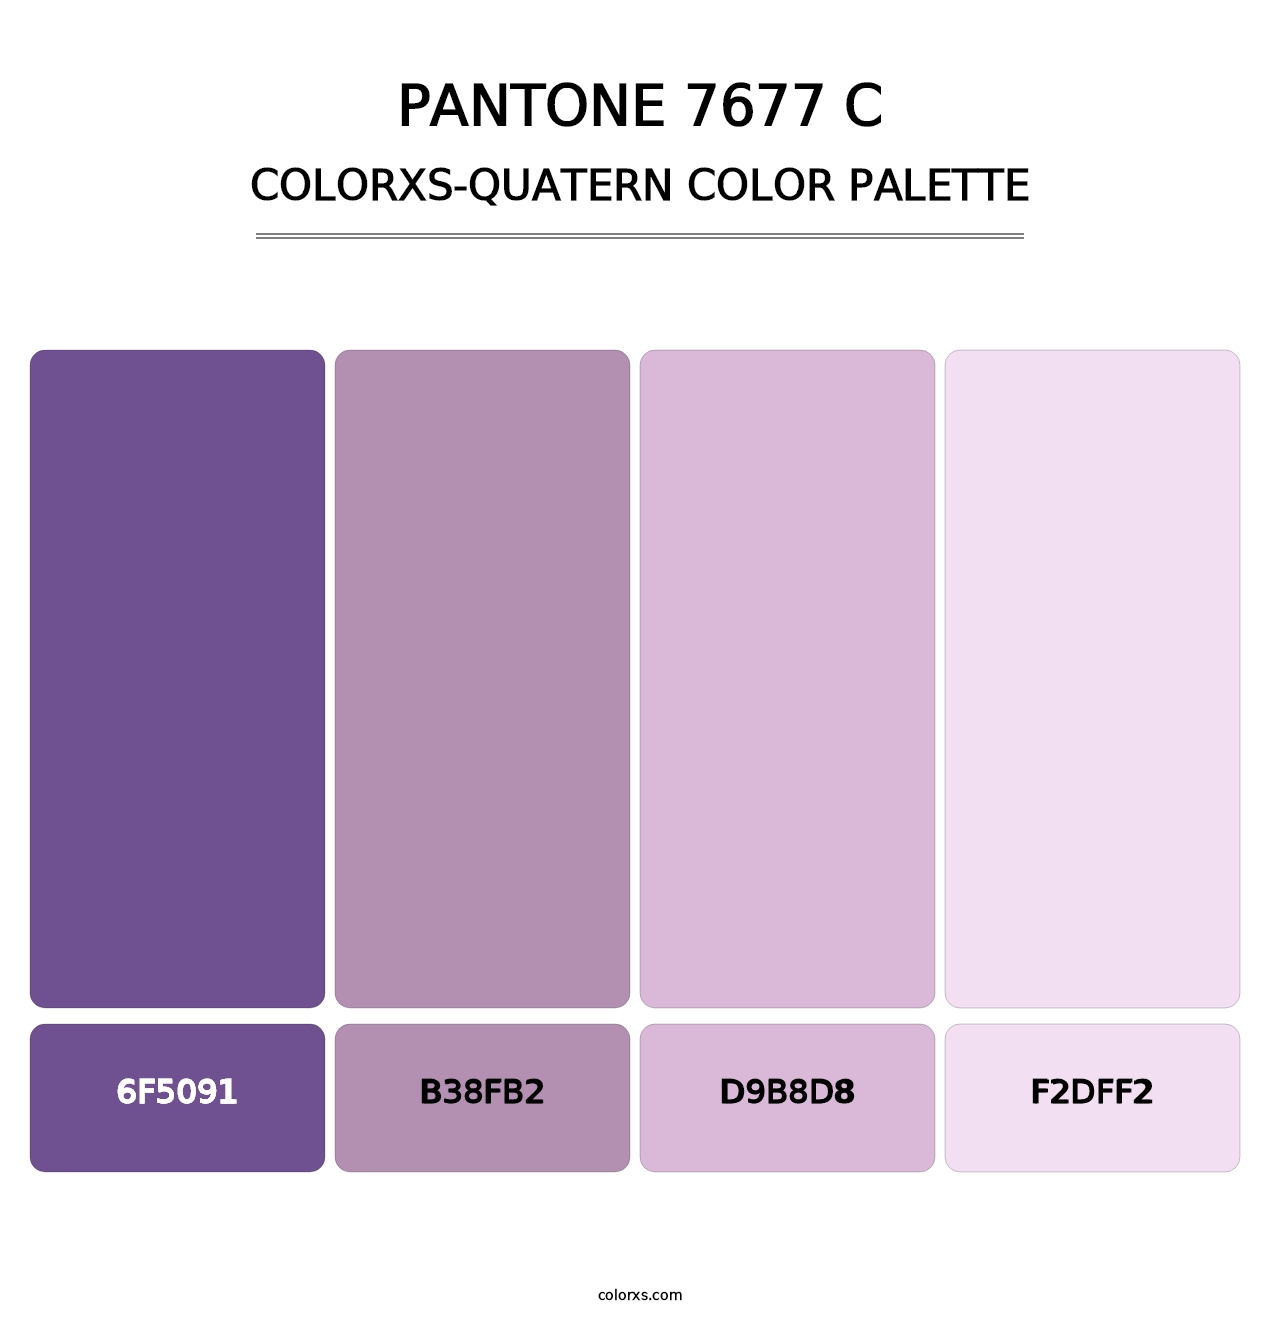 PANTONE 7677 C - Colorxs Quatern Palette